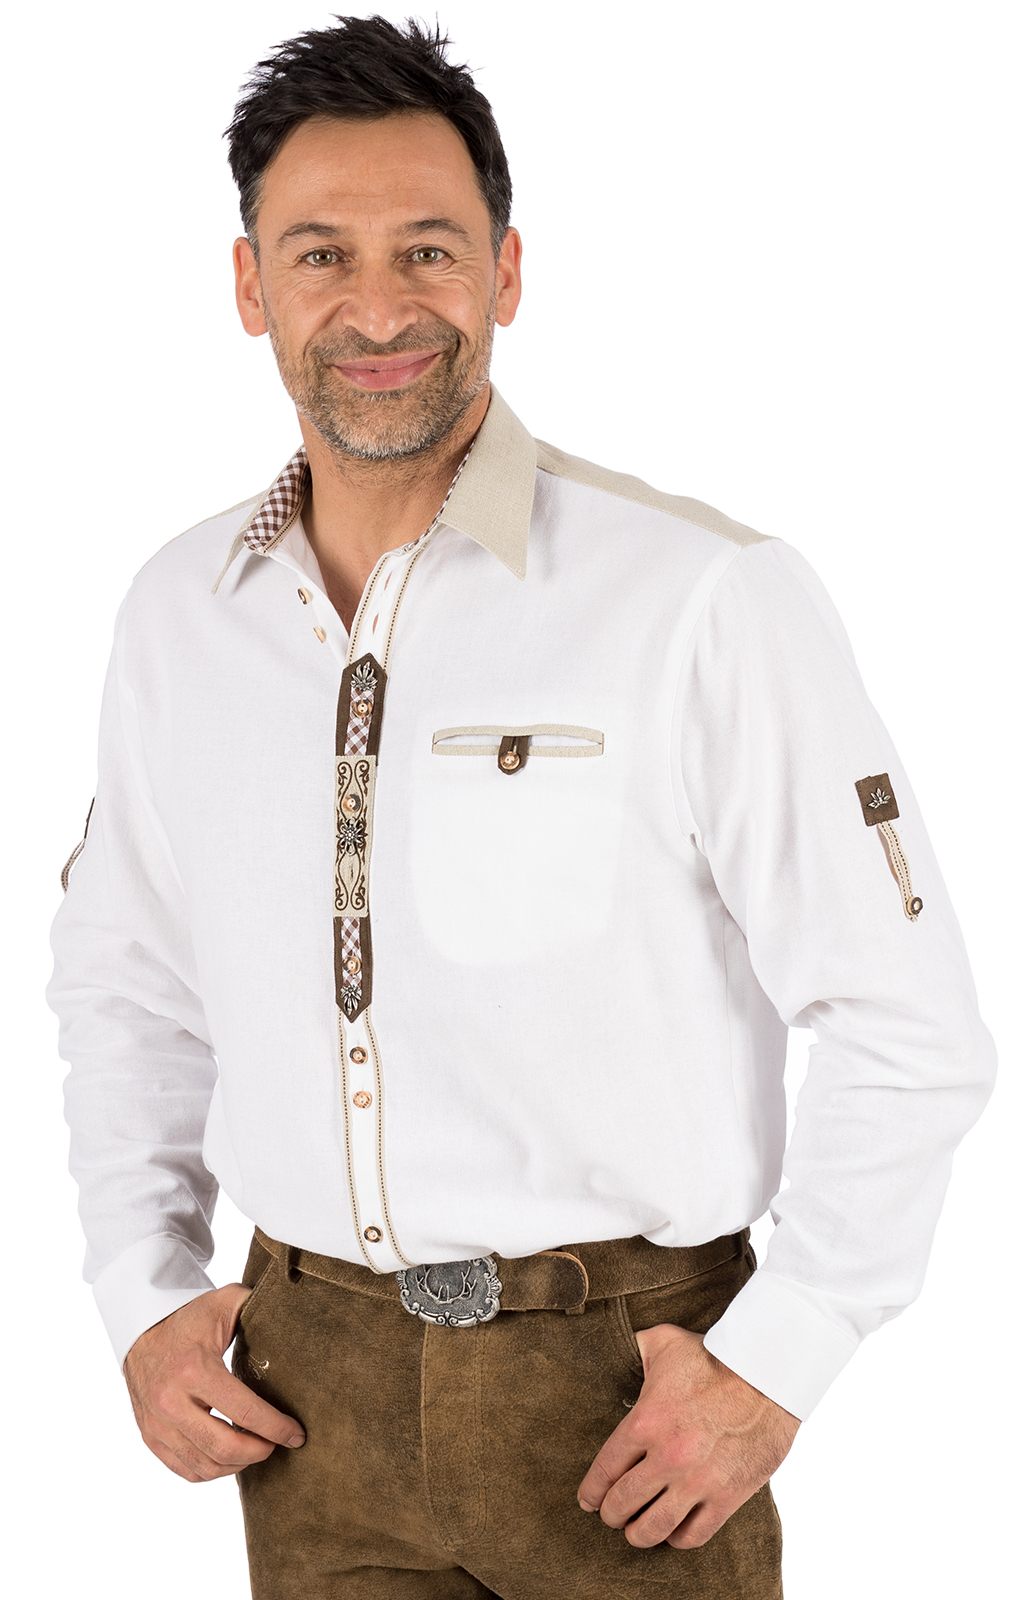 OS Trachtenhemd für Lederhosen Trachtenmode wiesn mit Verzierung Stehkragen weiß 